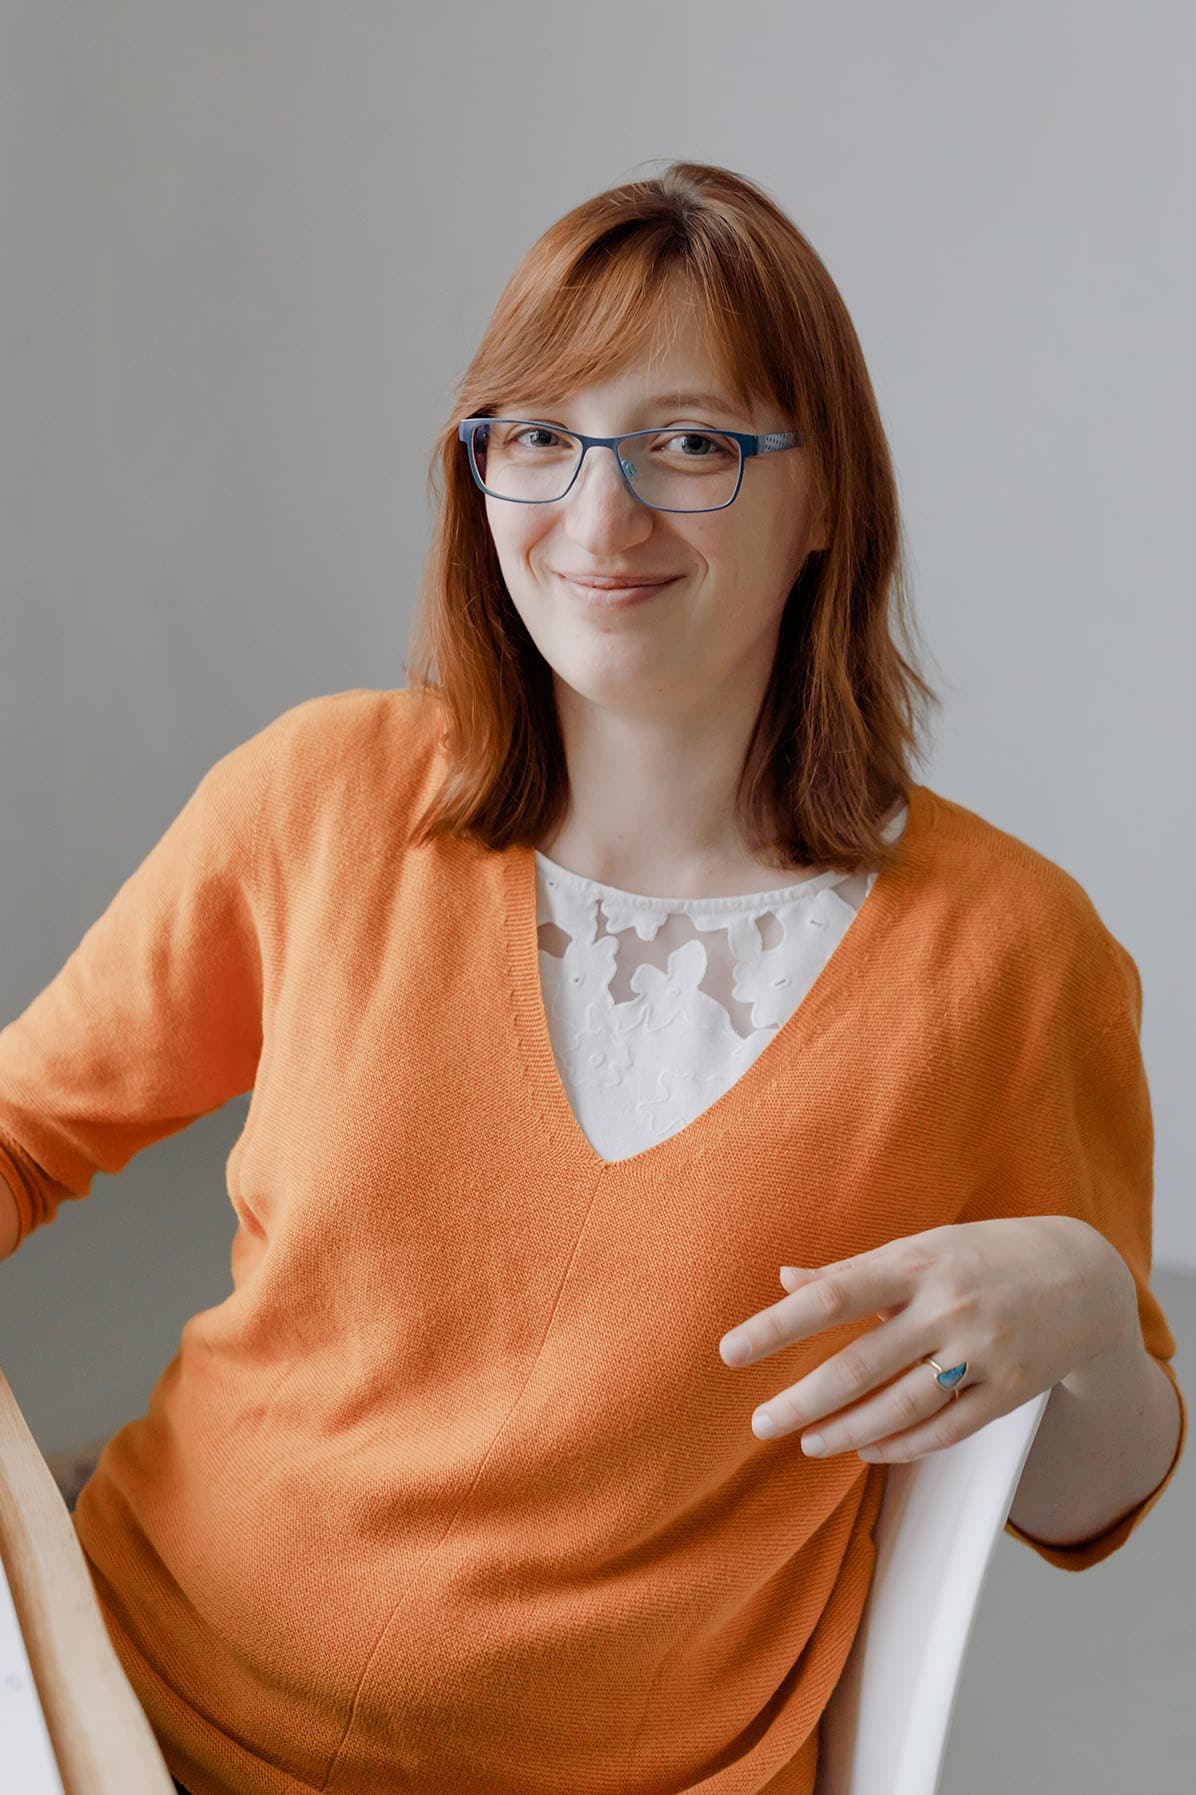 Hochsensibel und selbstständig - Interview mit SEO-Expertin Jane von Klee